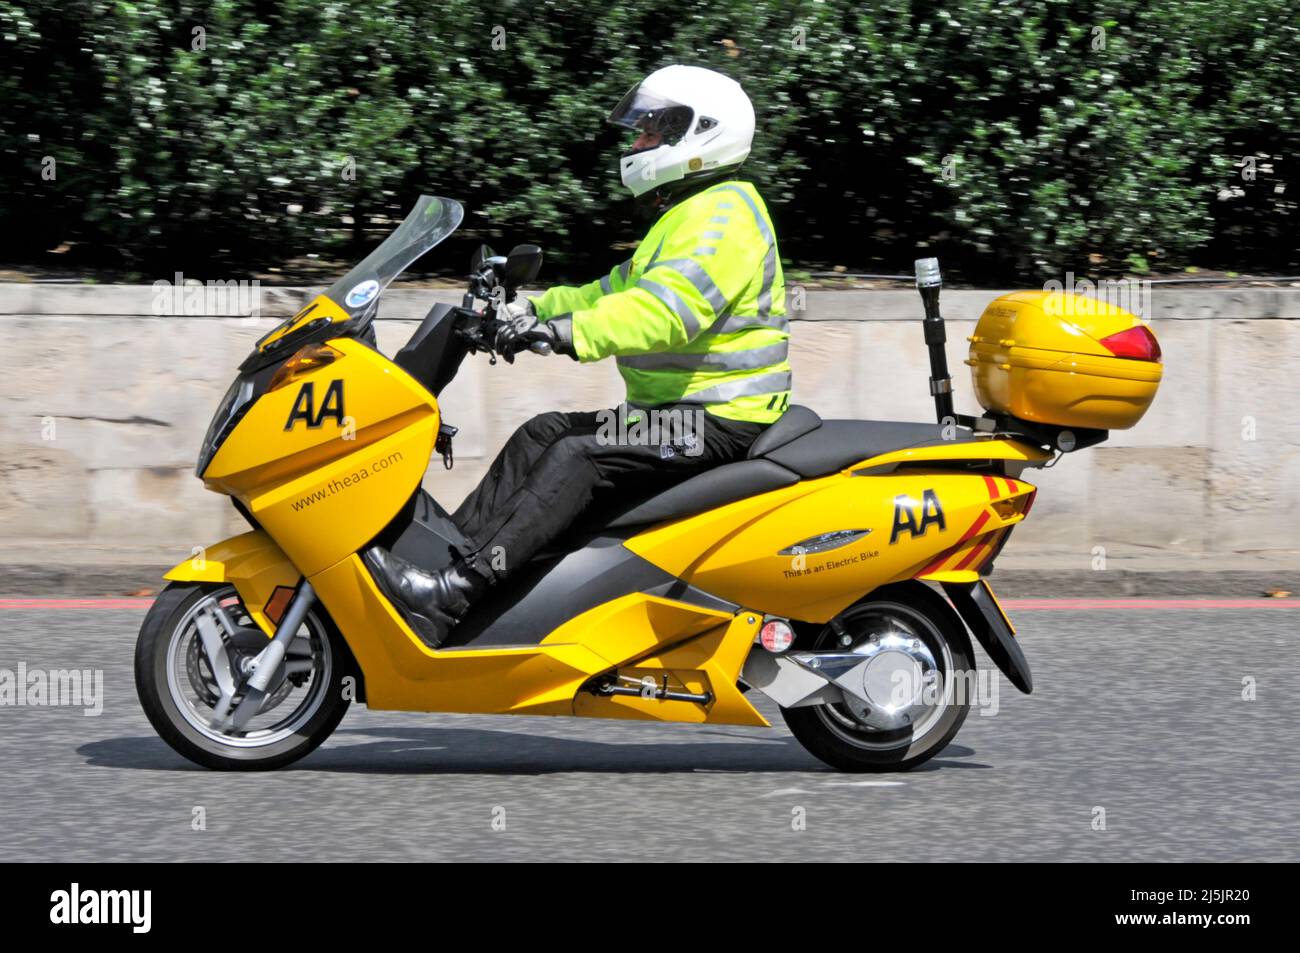 Vue latérale AA Patrolman veste haute visibilité équitation jaune scooter électrique vélo donner aux membres l'assistance routière dans les rues encombrées de Londres Angleterre Royaume-Uni Banque D'Images